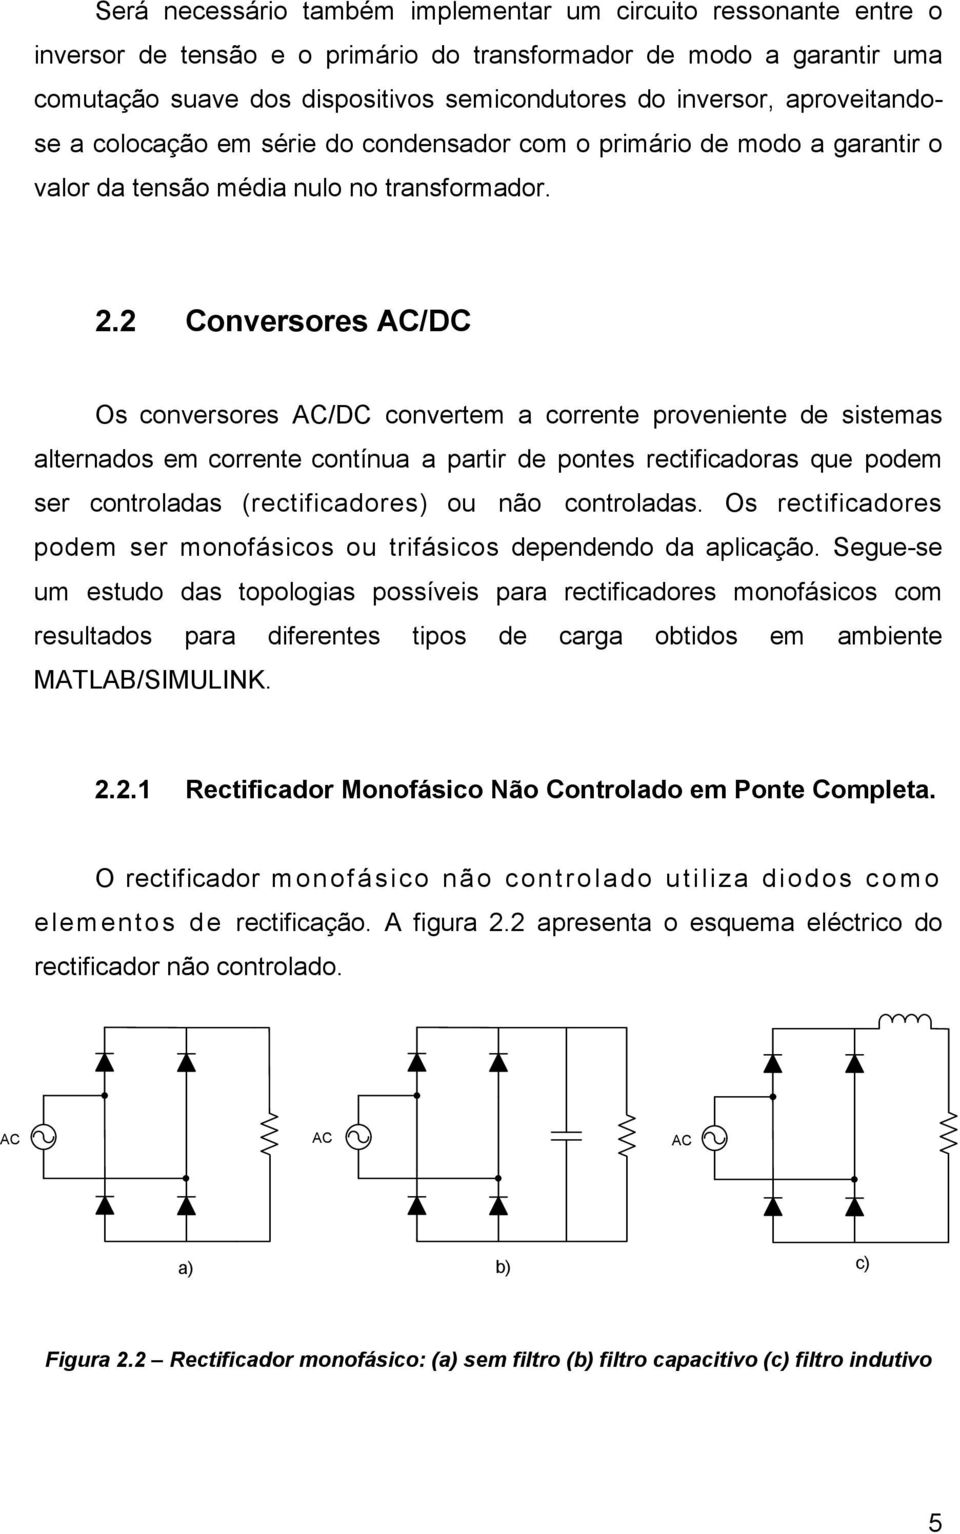 2 Conversores AC/DC Os conversores AC/DC convertem a corrente proveniente de sistemas alternados em corrente contínua a partir de pontes rectificadoras que podem ser controladas (rectificadores) ou